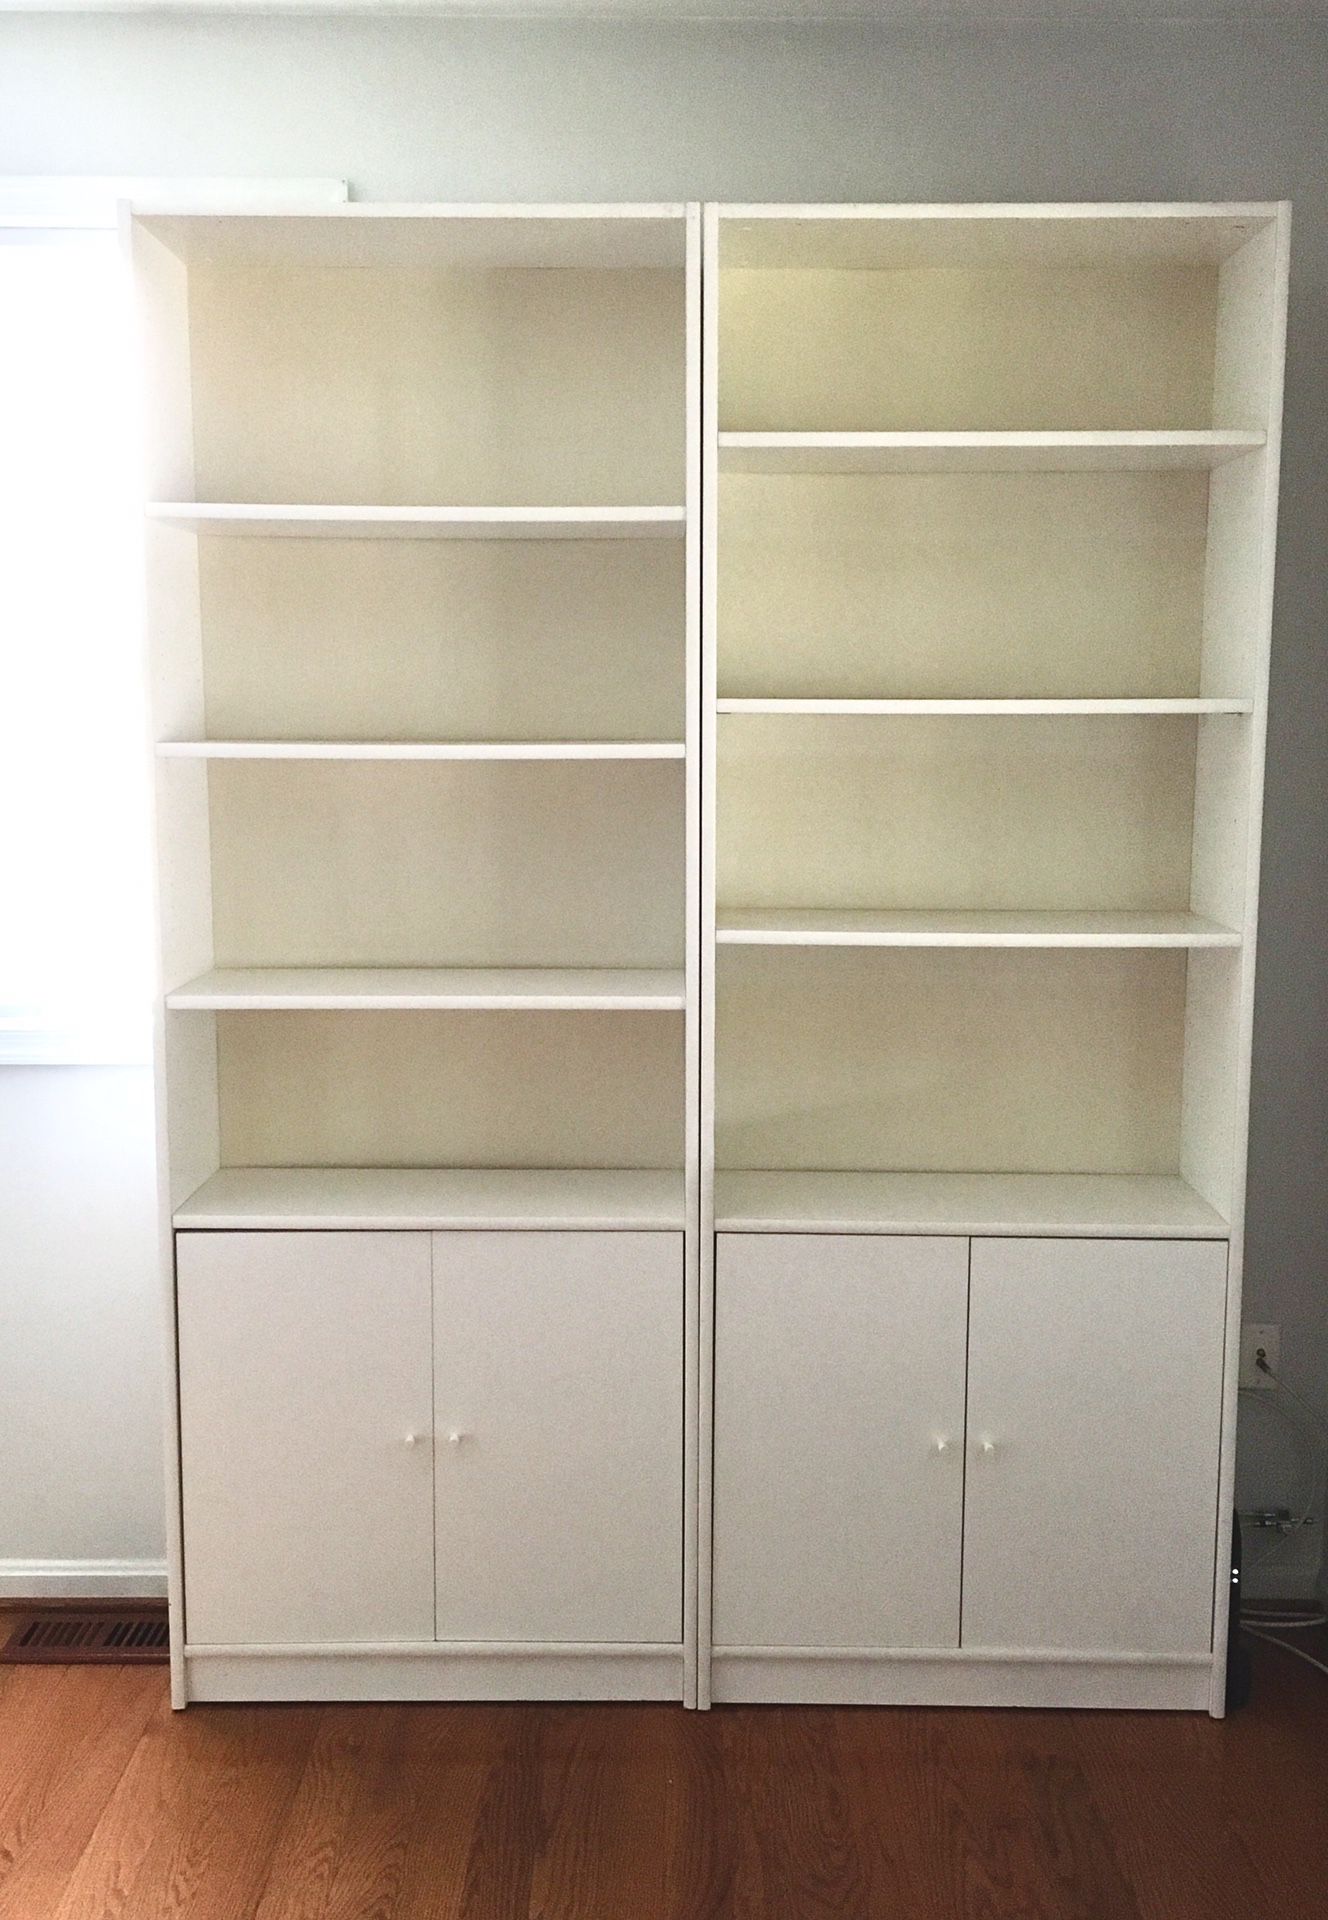 2 Tall Book Shelves